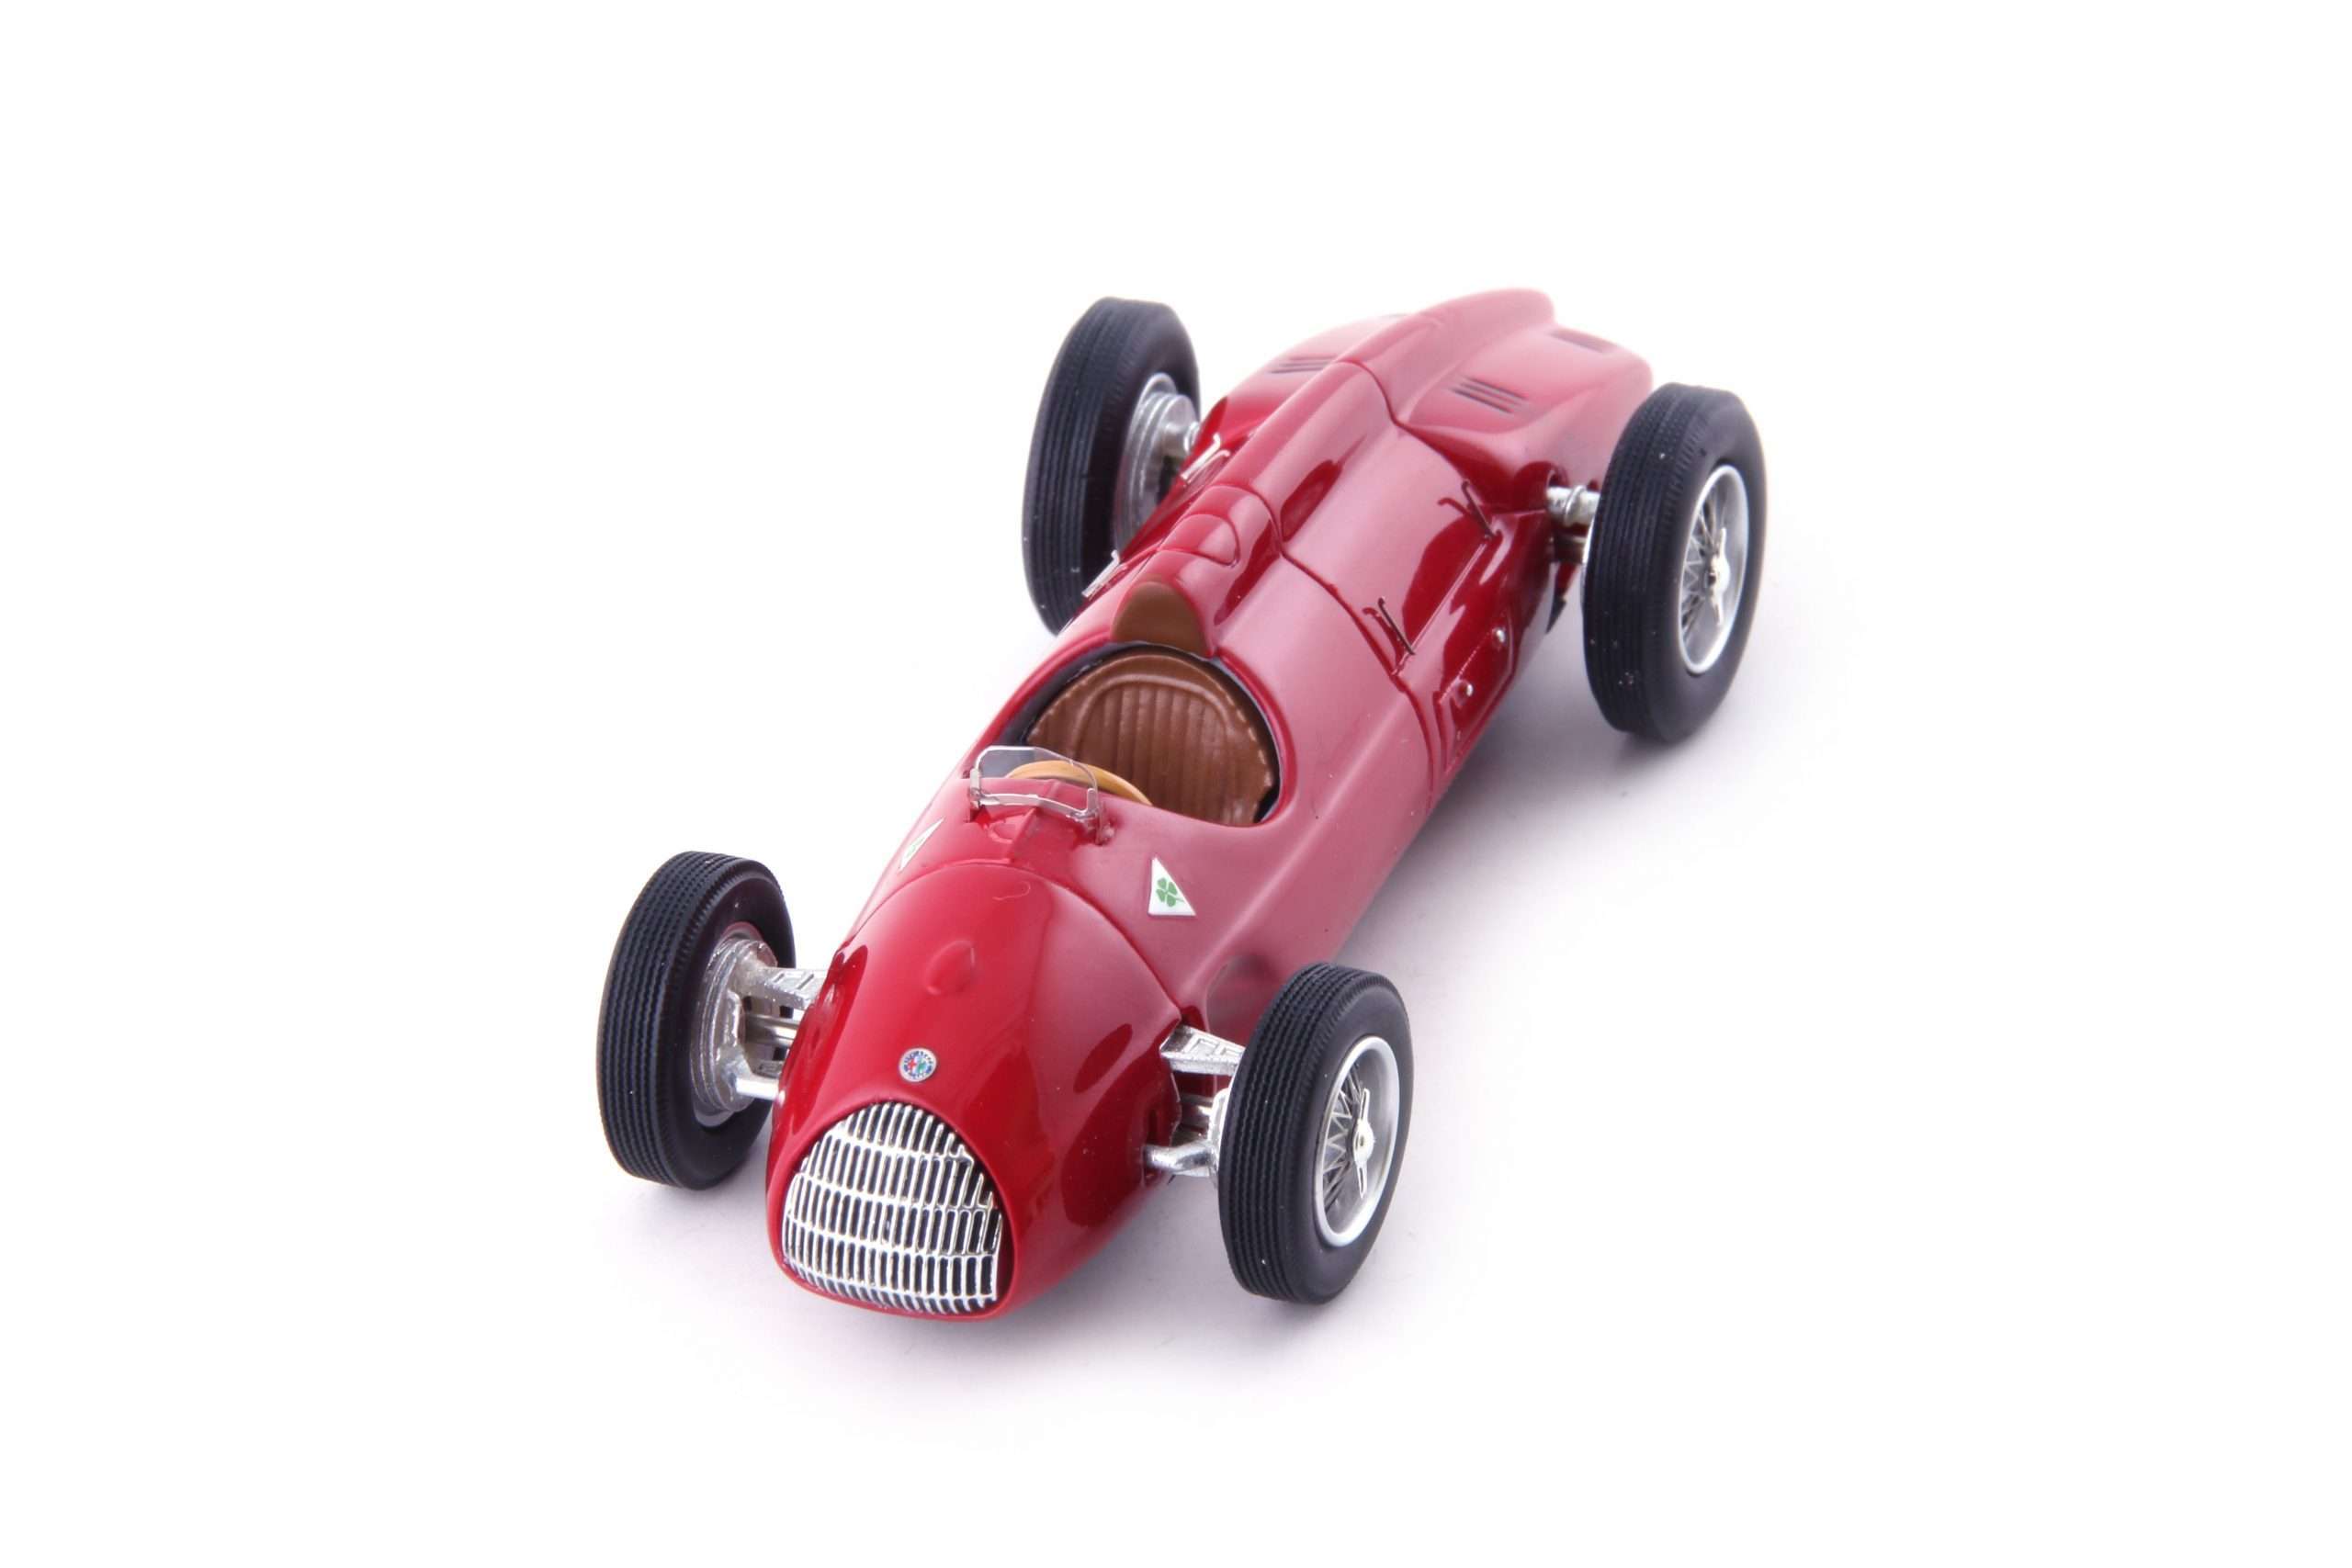 07023 Alfa Romeo Tipo 512 vol 5184x3456 300dpi q12